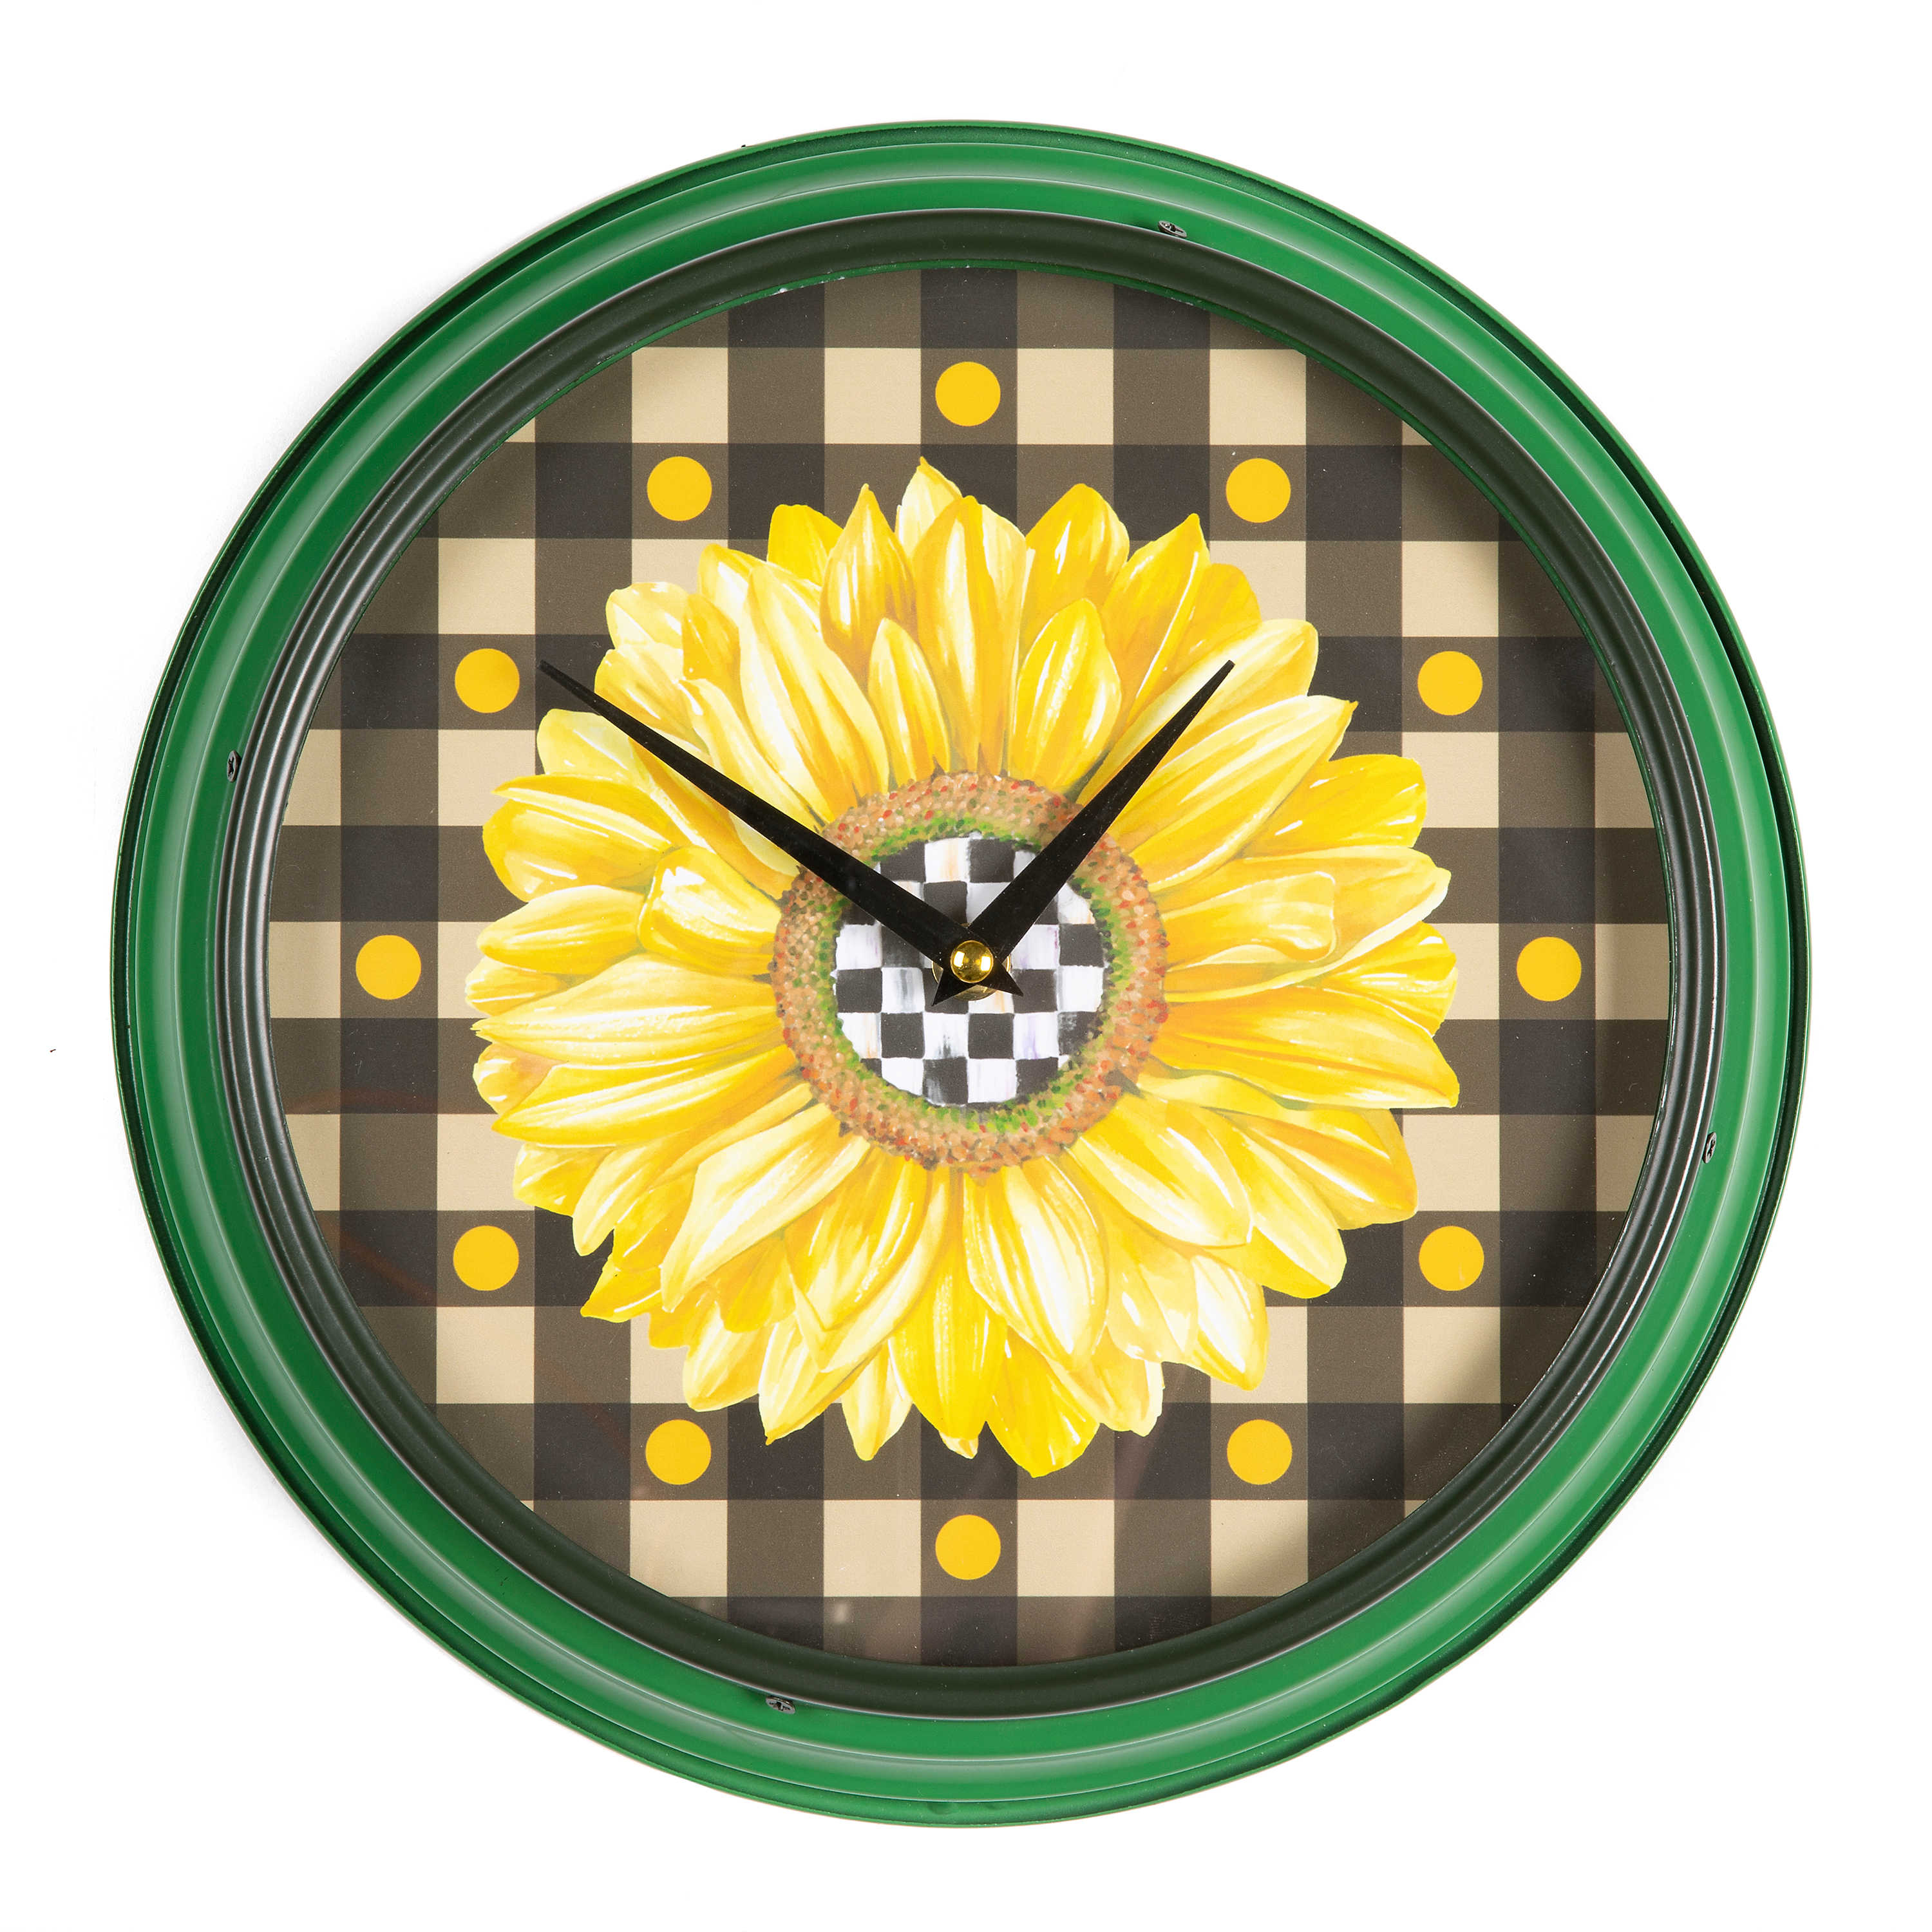 Sunflower Wall Clock mackenzie-childs Panama 0